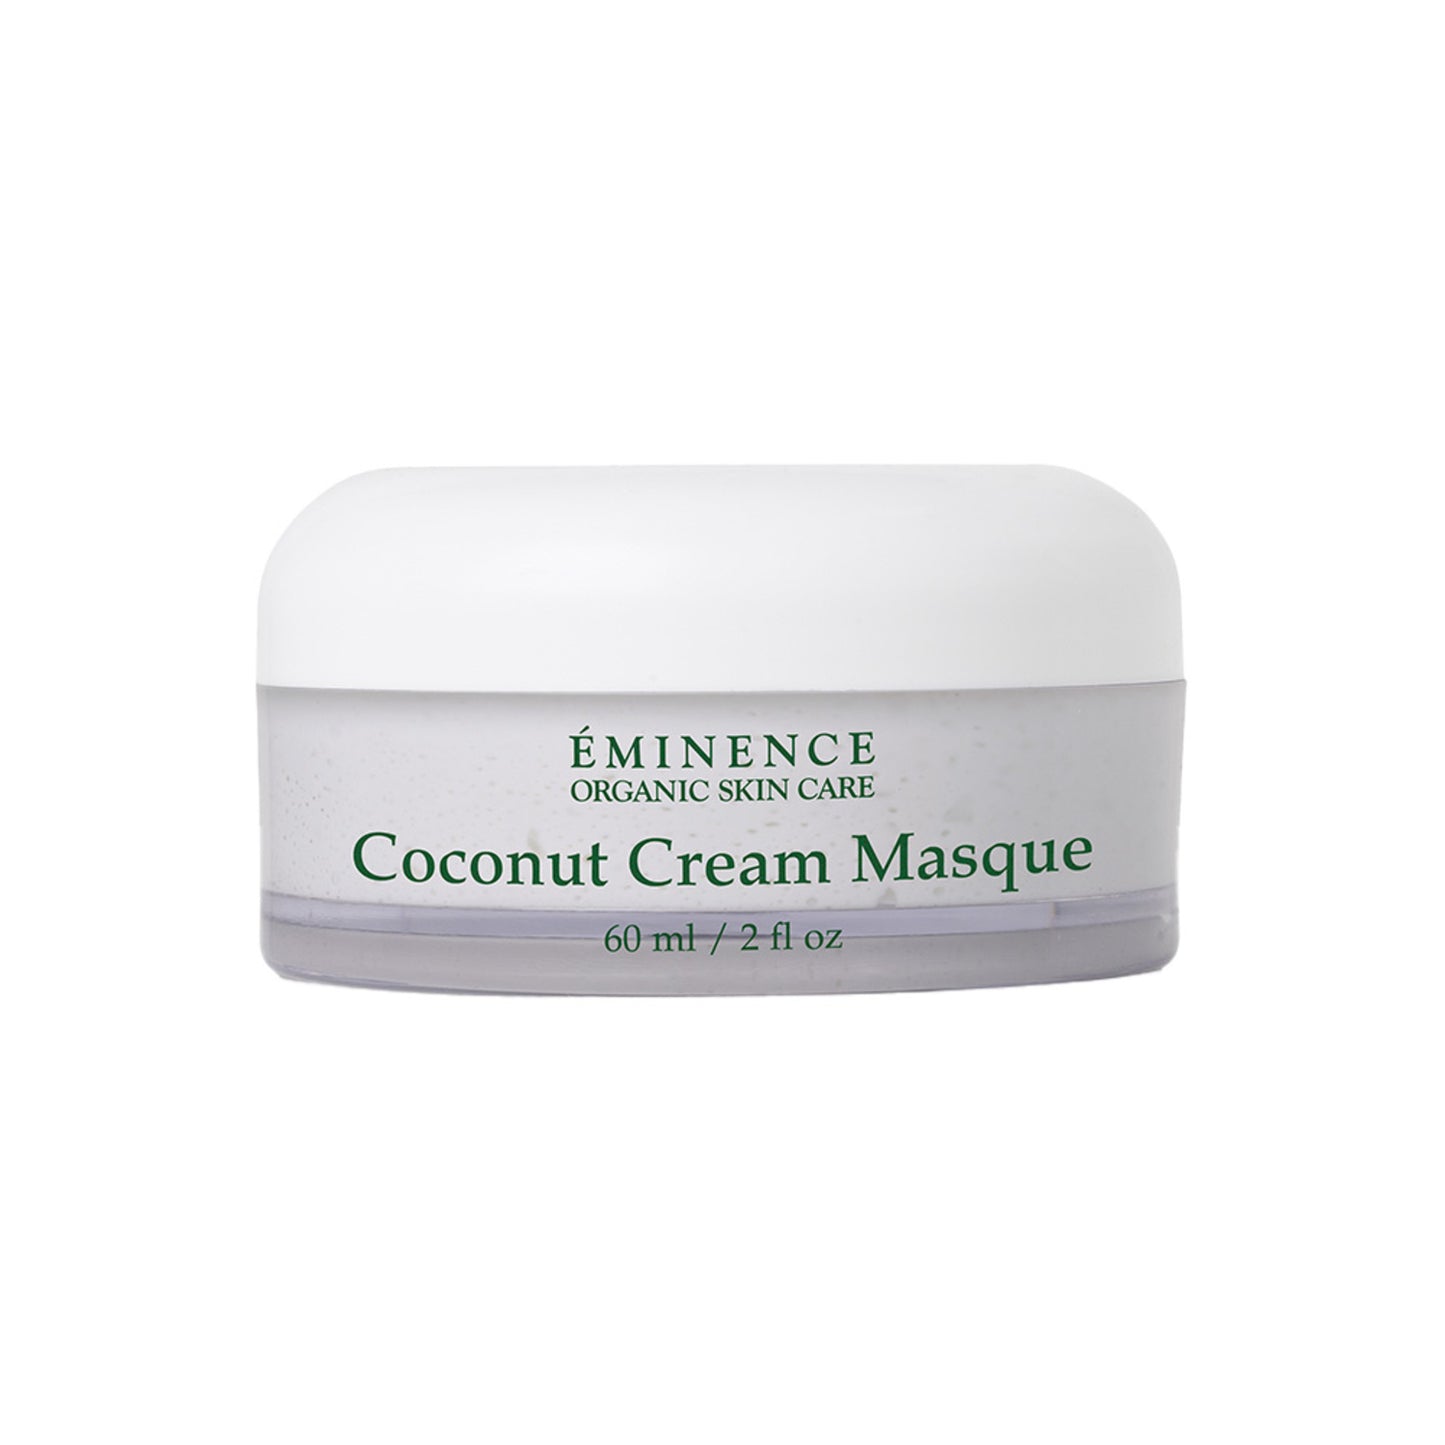 Eminence Organics Coconut Cream Masque